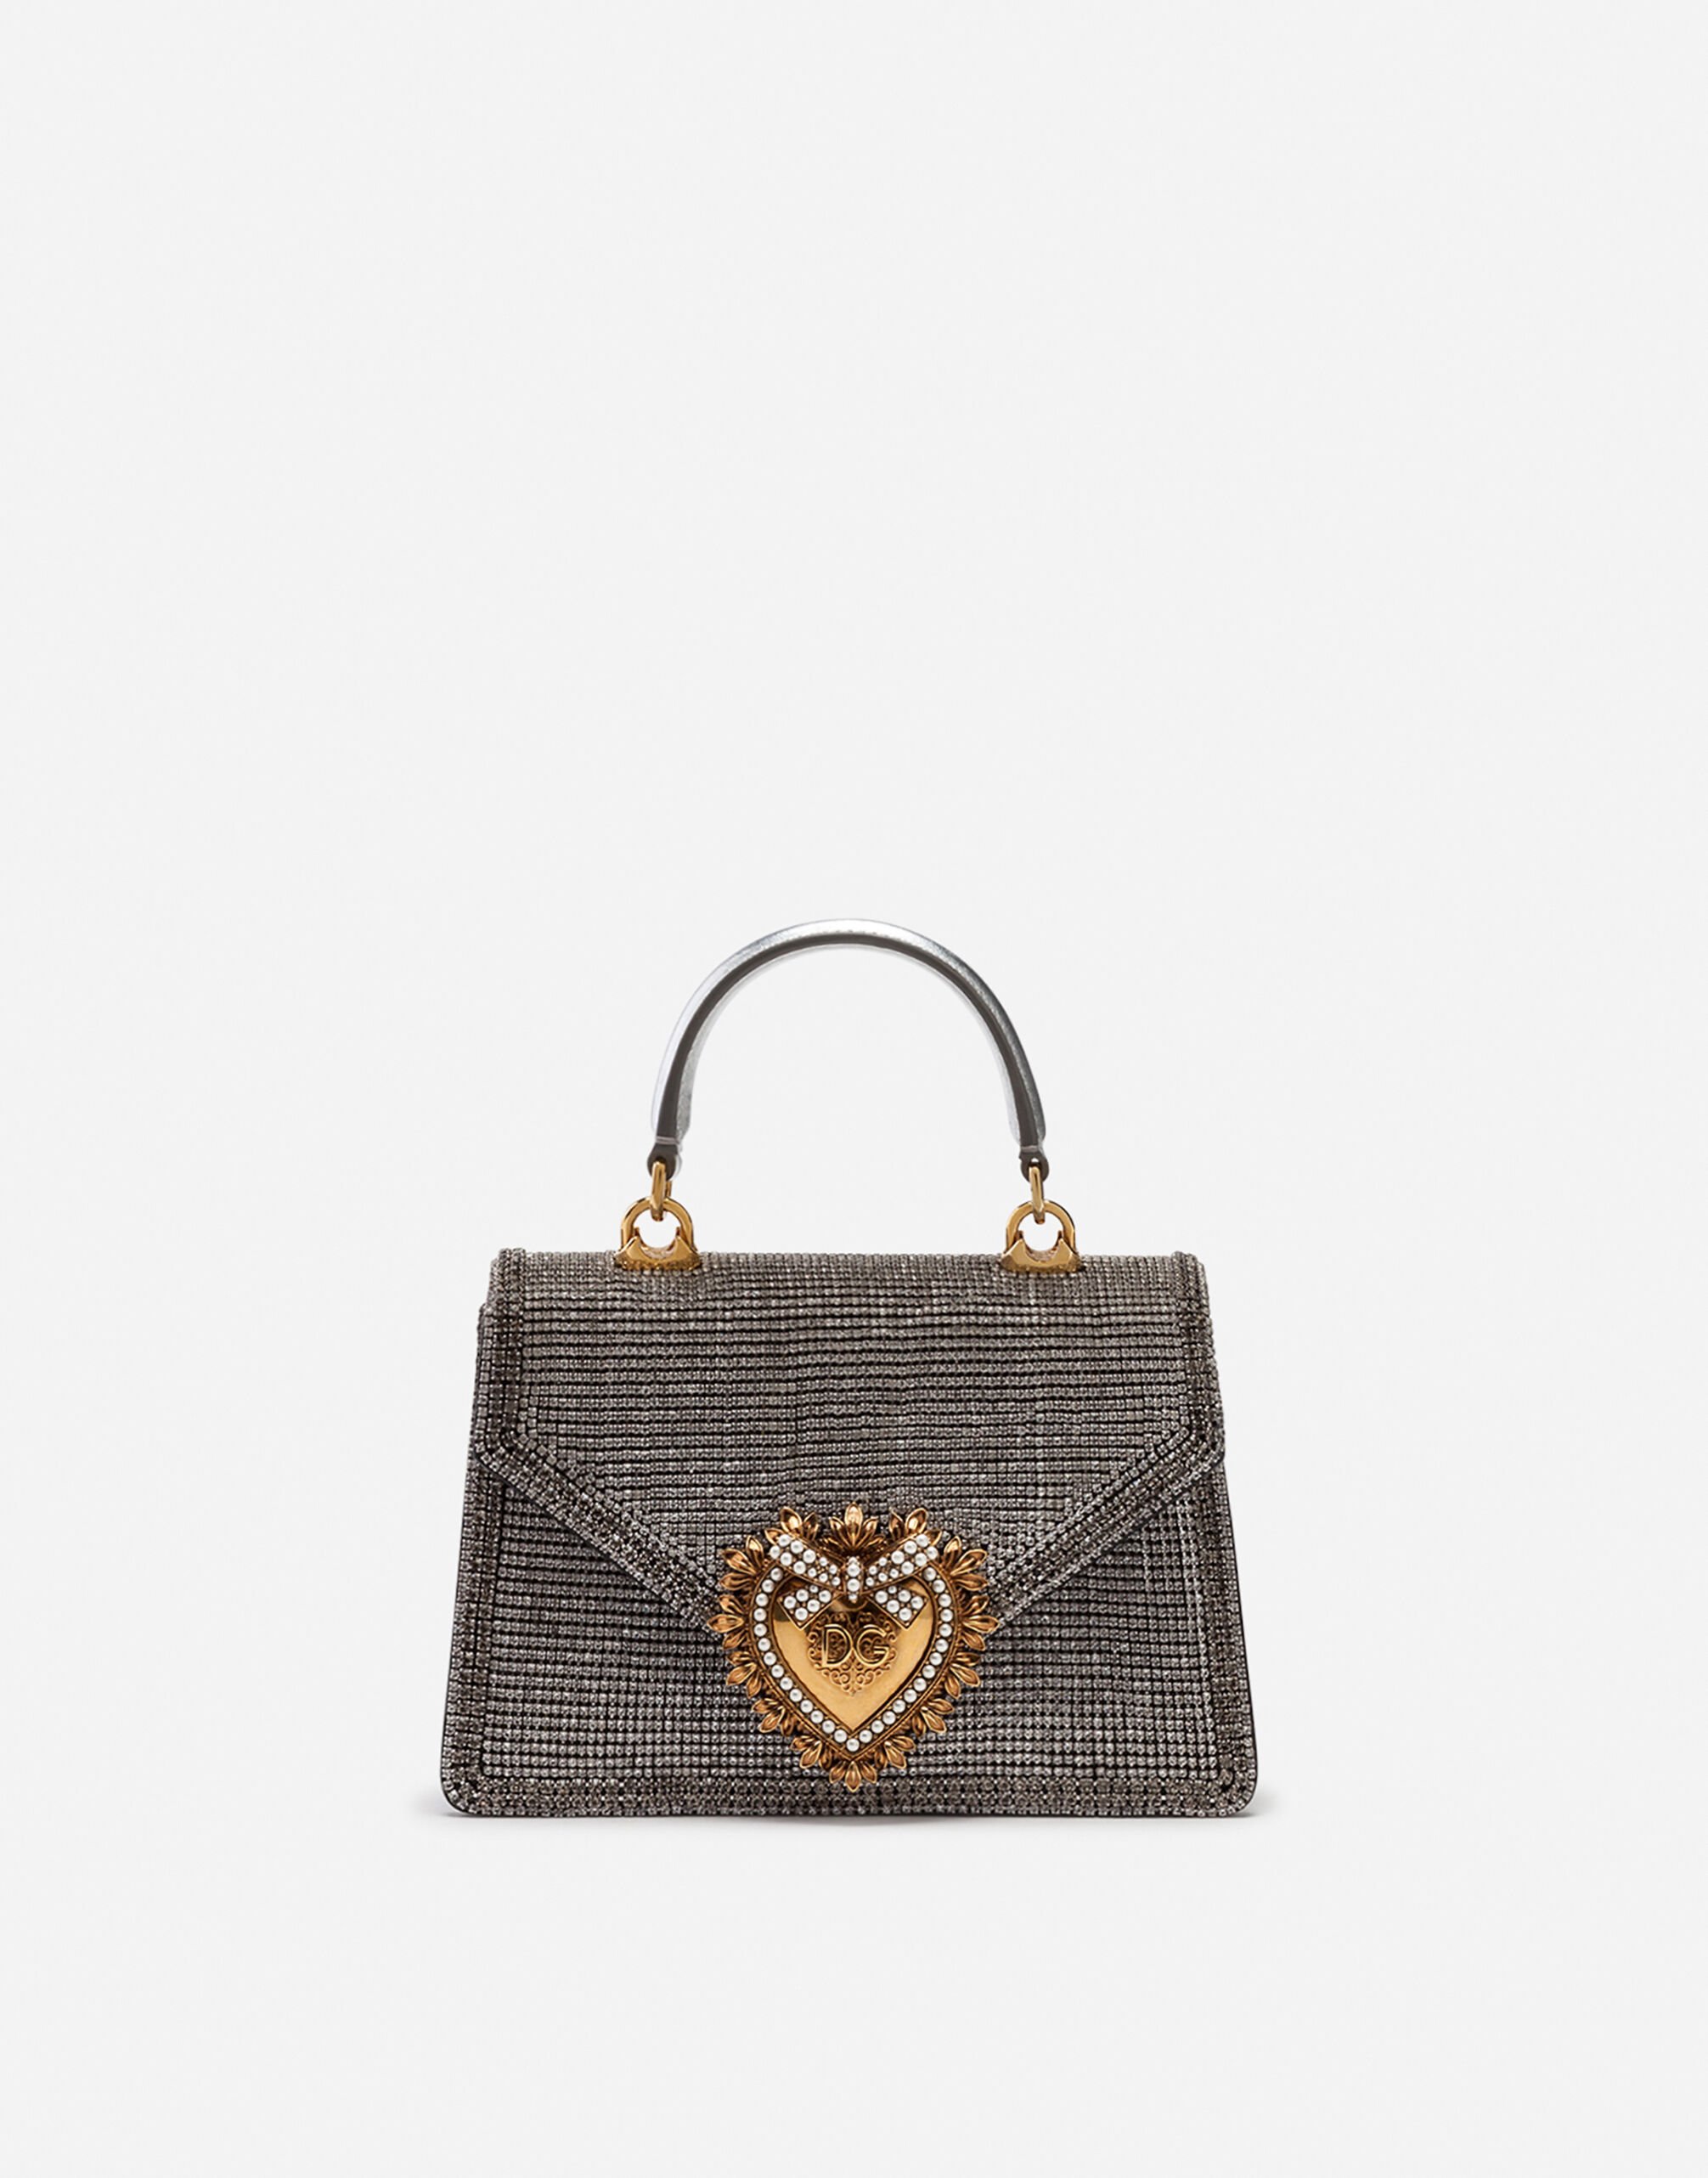 Dolce & Gabbana Маленькая сумка Devotion из стразов и наппы с металлическим отливом РОЗОВЫЙ BB6003A1001